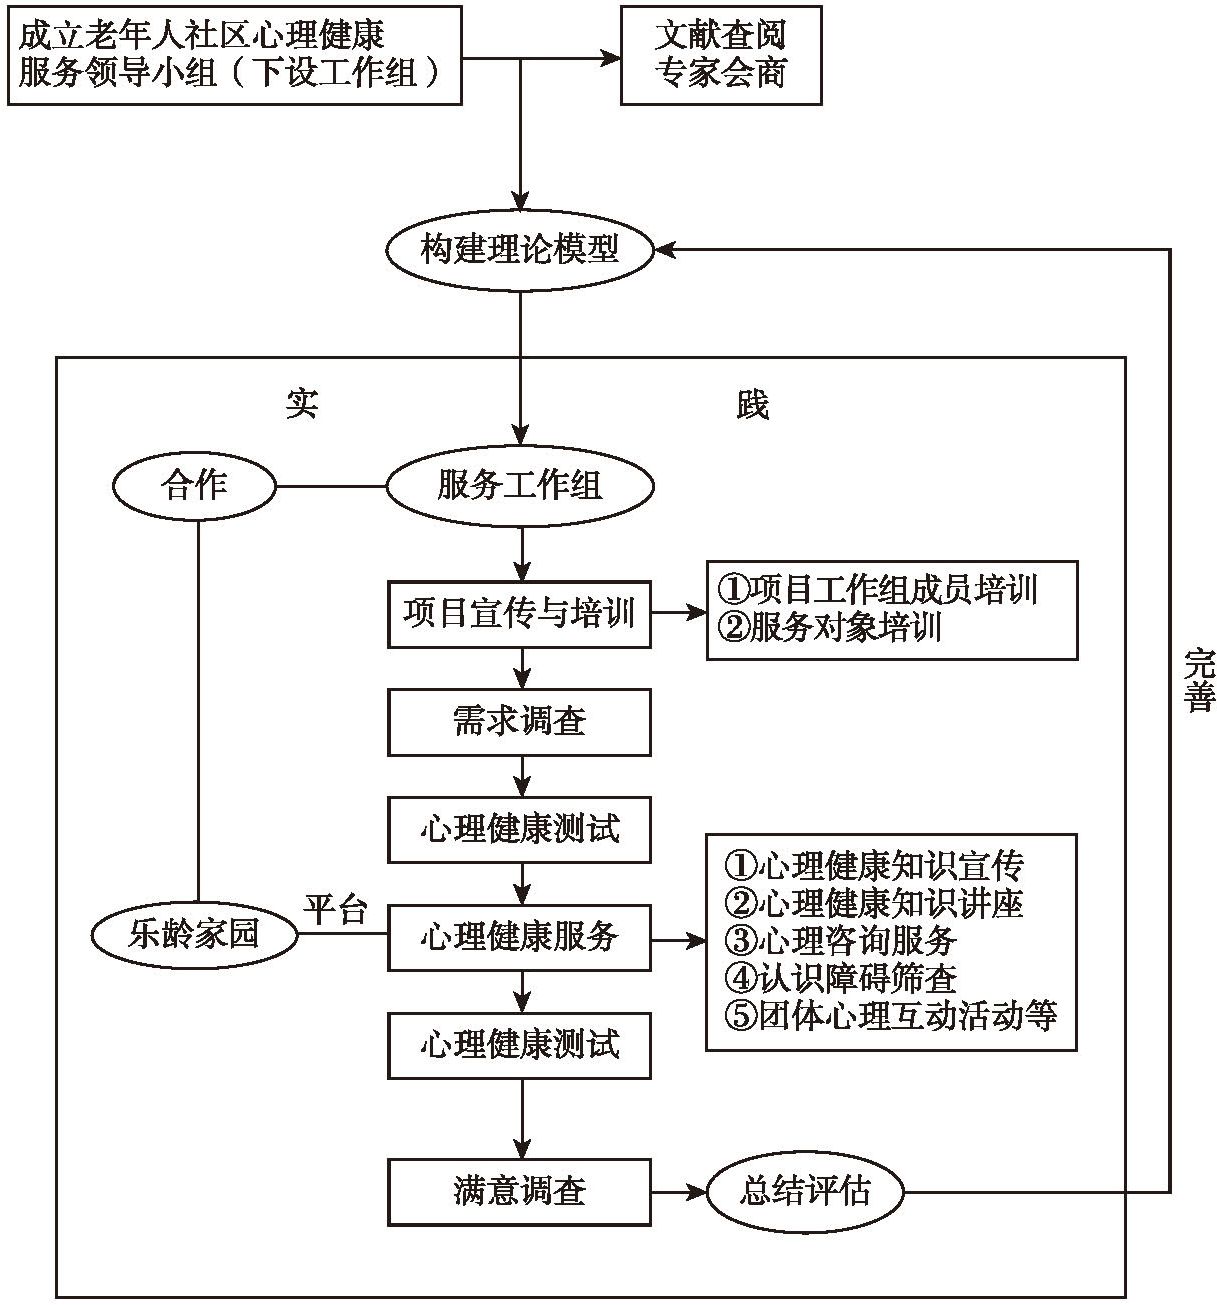 图8-1 上海市静安区老年人社区心理健康服务模式构建流程